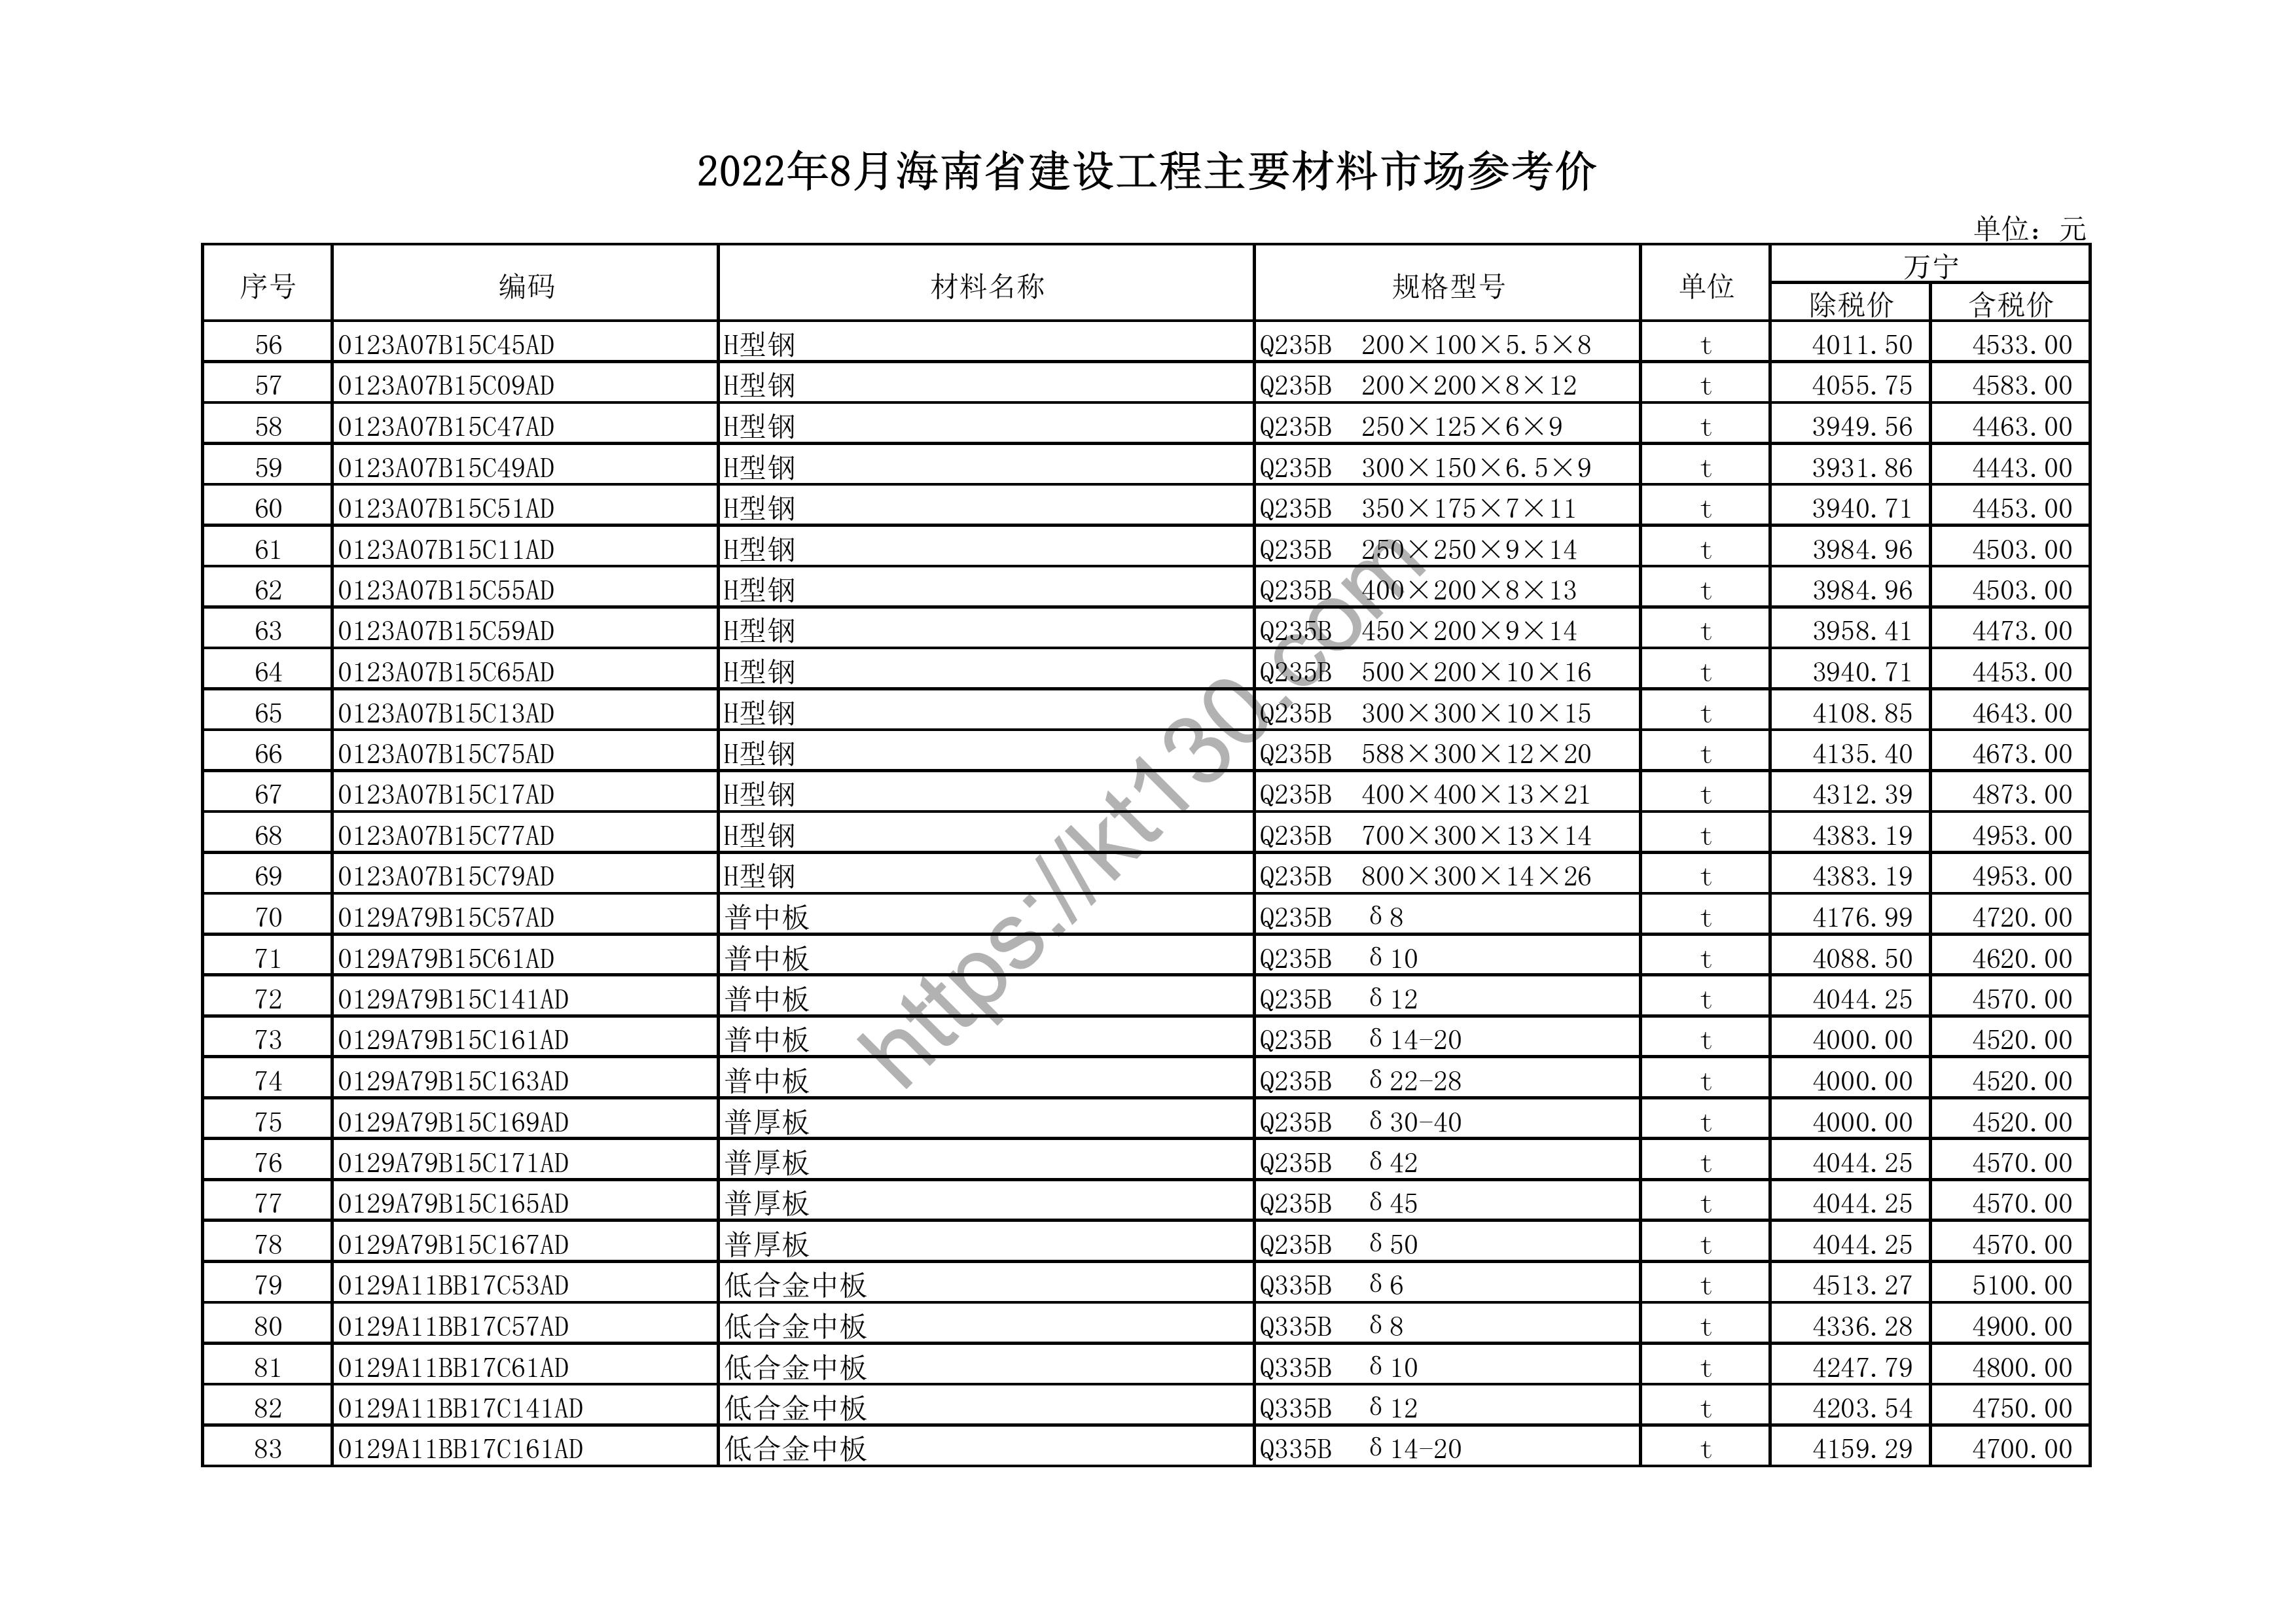 海南省2022年8月建筑材料价_喷涂铝合金窗_44665